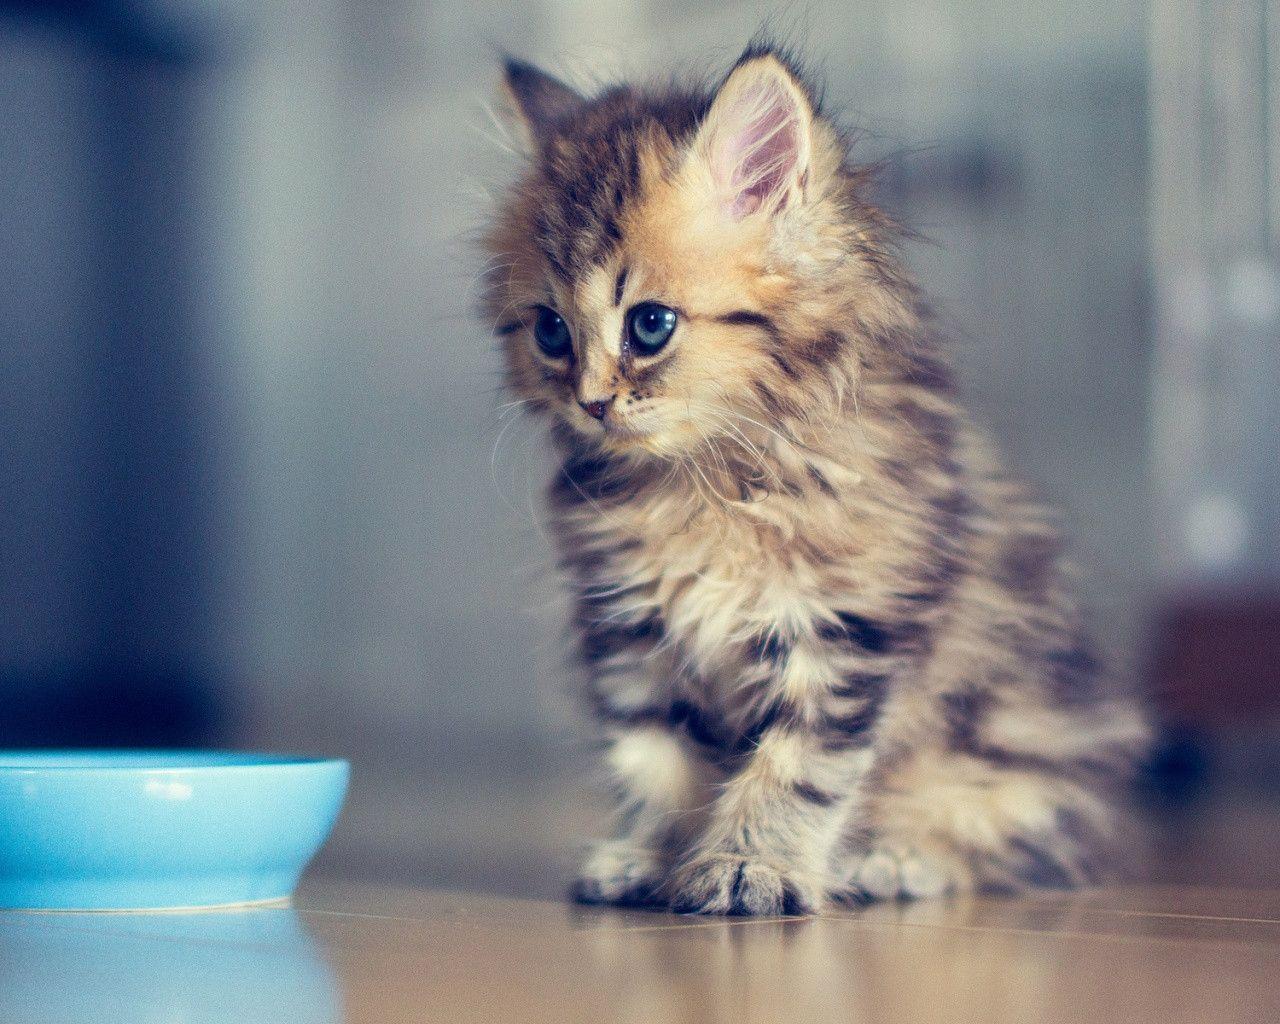 Cute Kitten Wallpaper. Animals. Best Wallpaper HD for Desktop